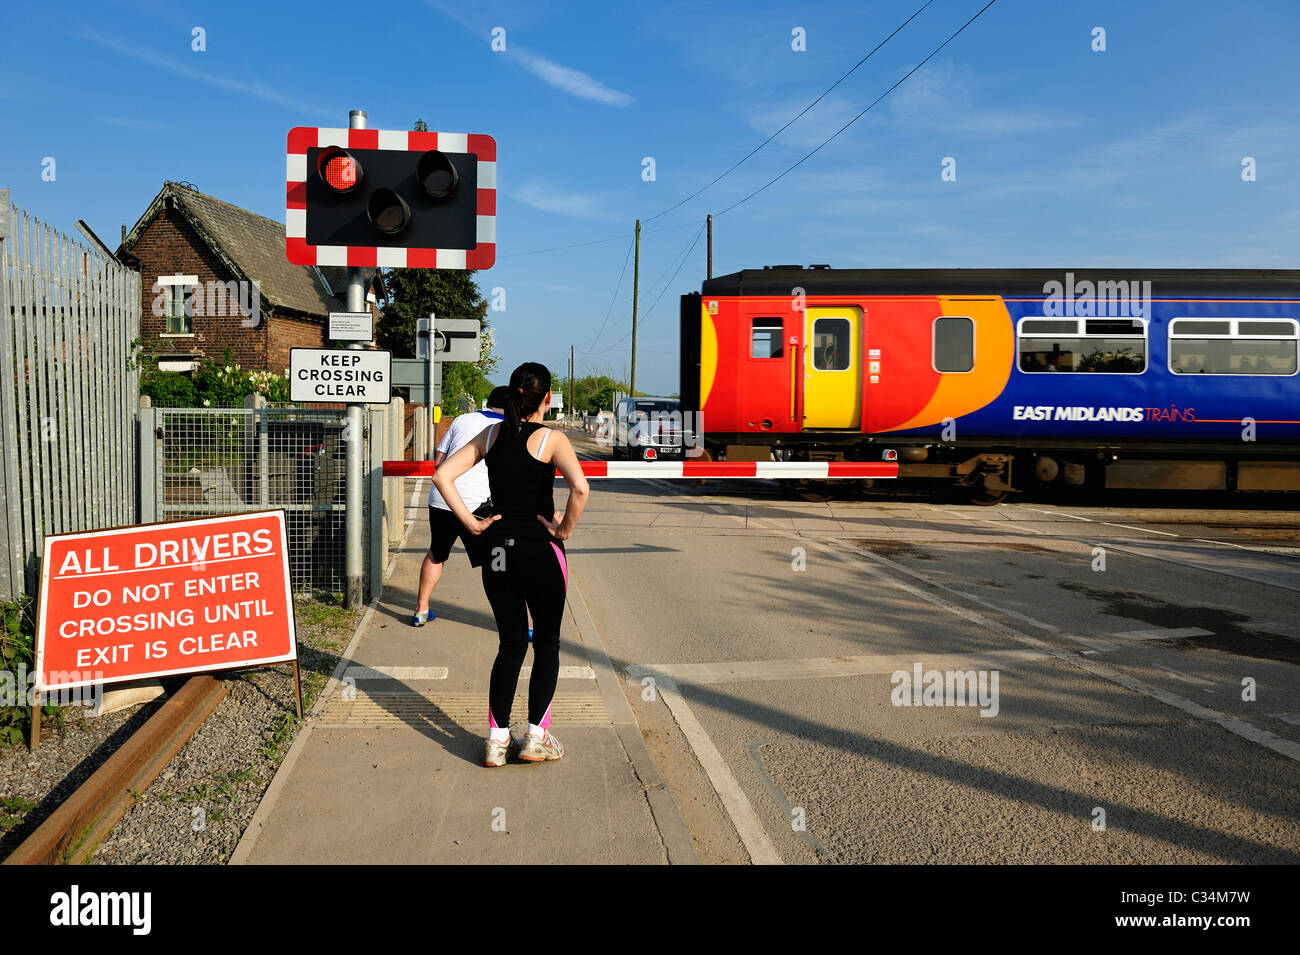 Les coureurs en attente à un passage à niveau alors qu'un train de banlieue passe local england uk nottingham Beeston Banque D'Images